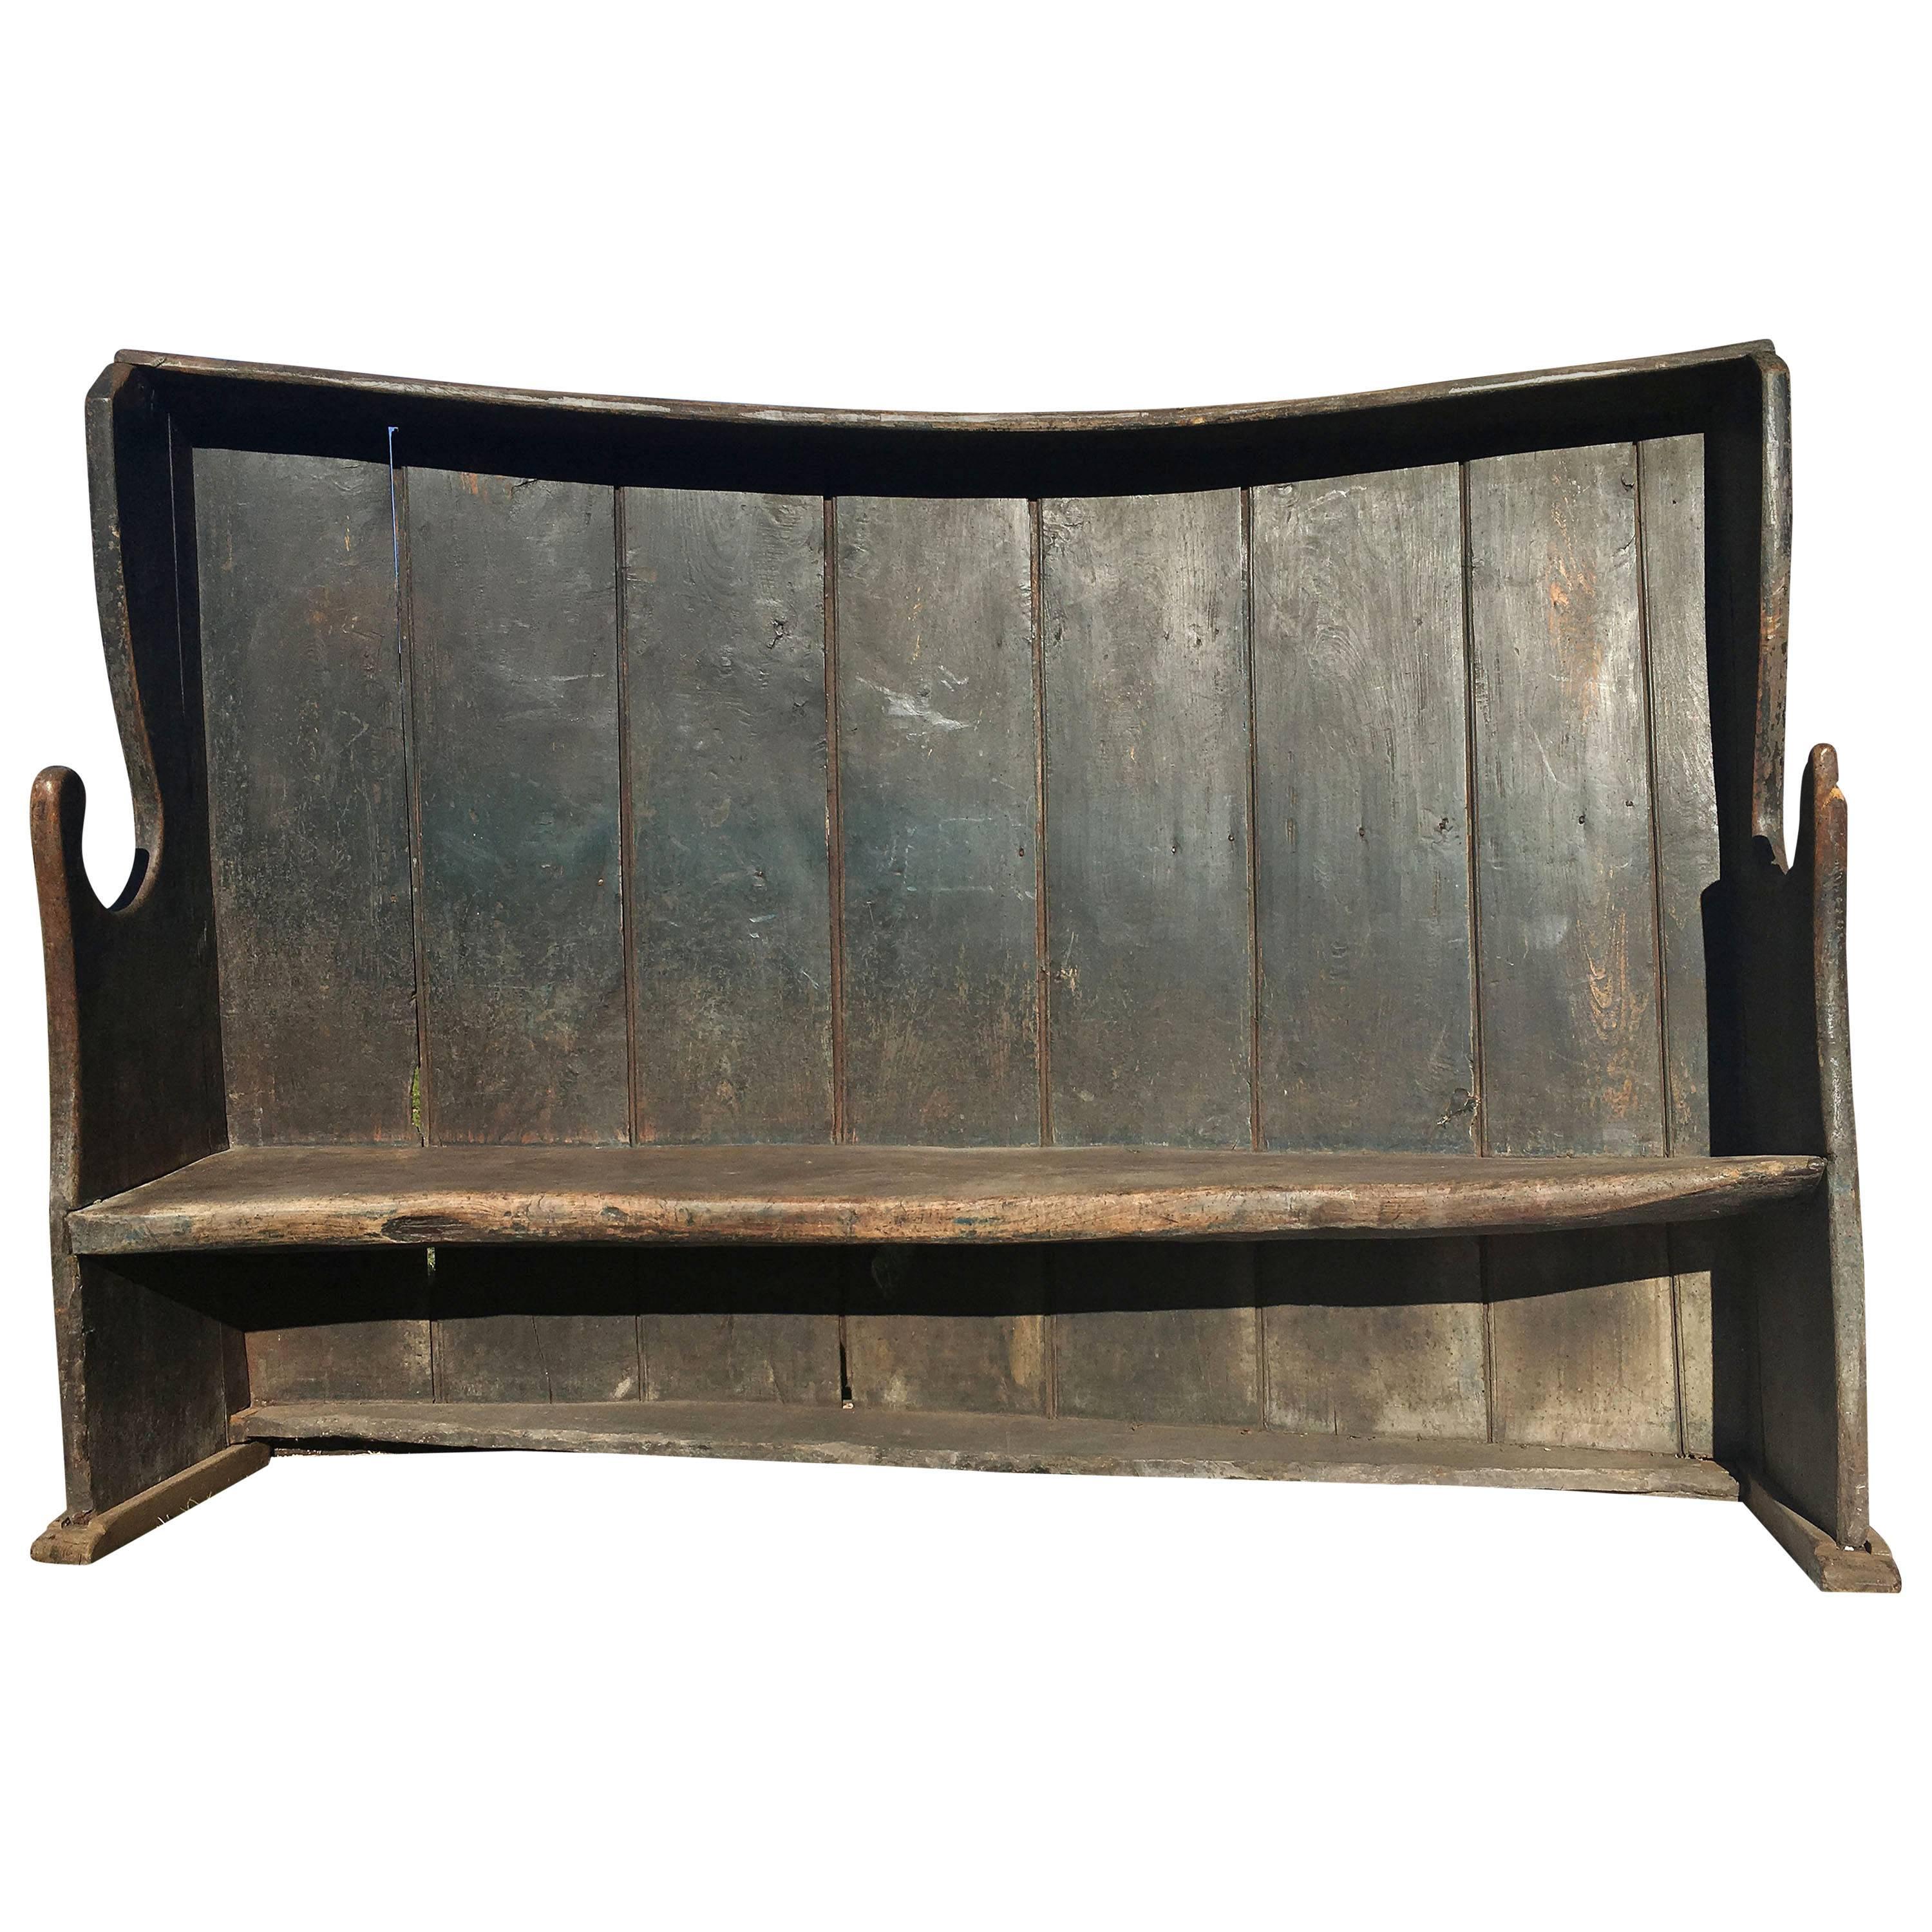 Englische Settle Bench im Vintage-Stil, ca. 19. Jahrhundert